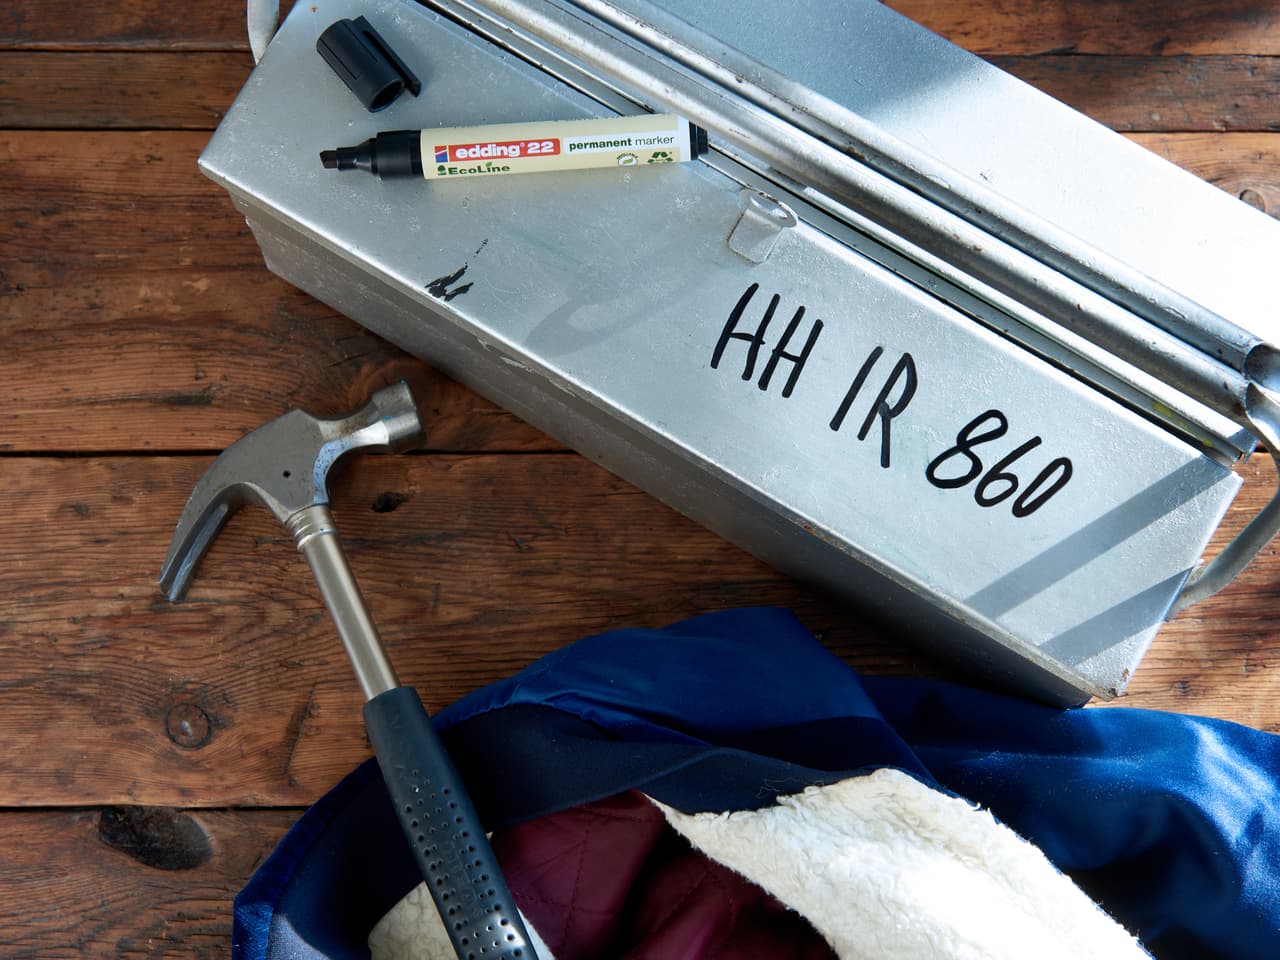 Ein Werkzeugkasten aus Metall mit der Aufschrift „hh ir 860“ neben einem Hammer und blauem Edding-Stoff auf einer Holzoberfläche.